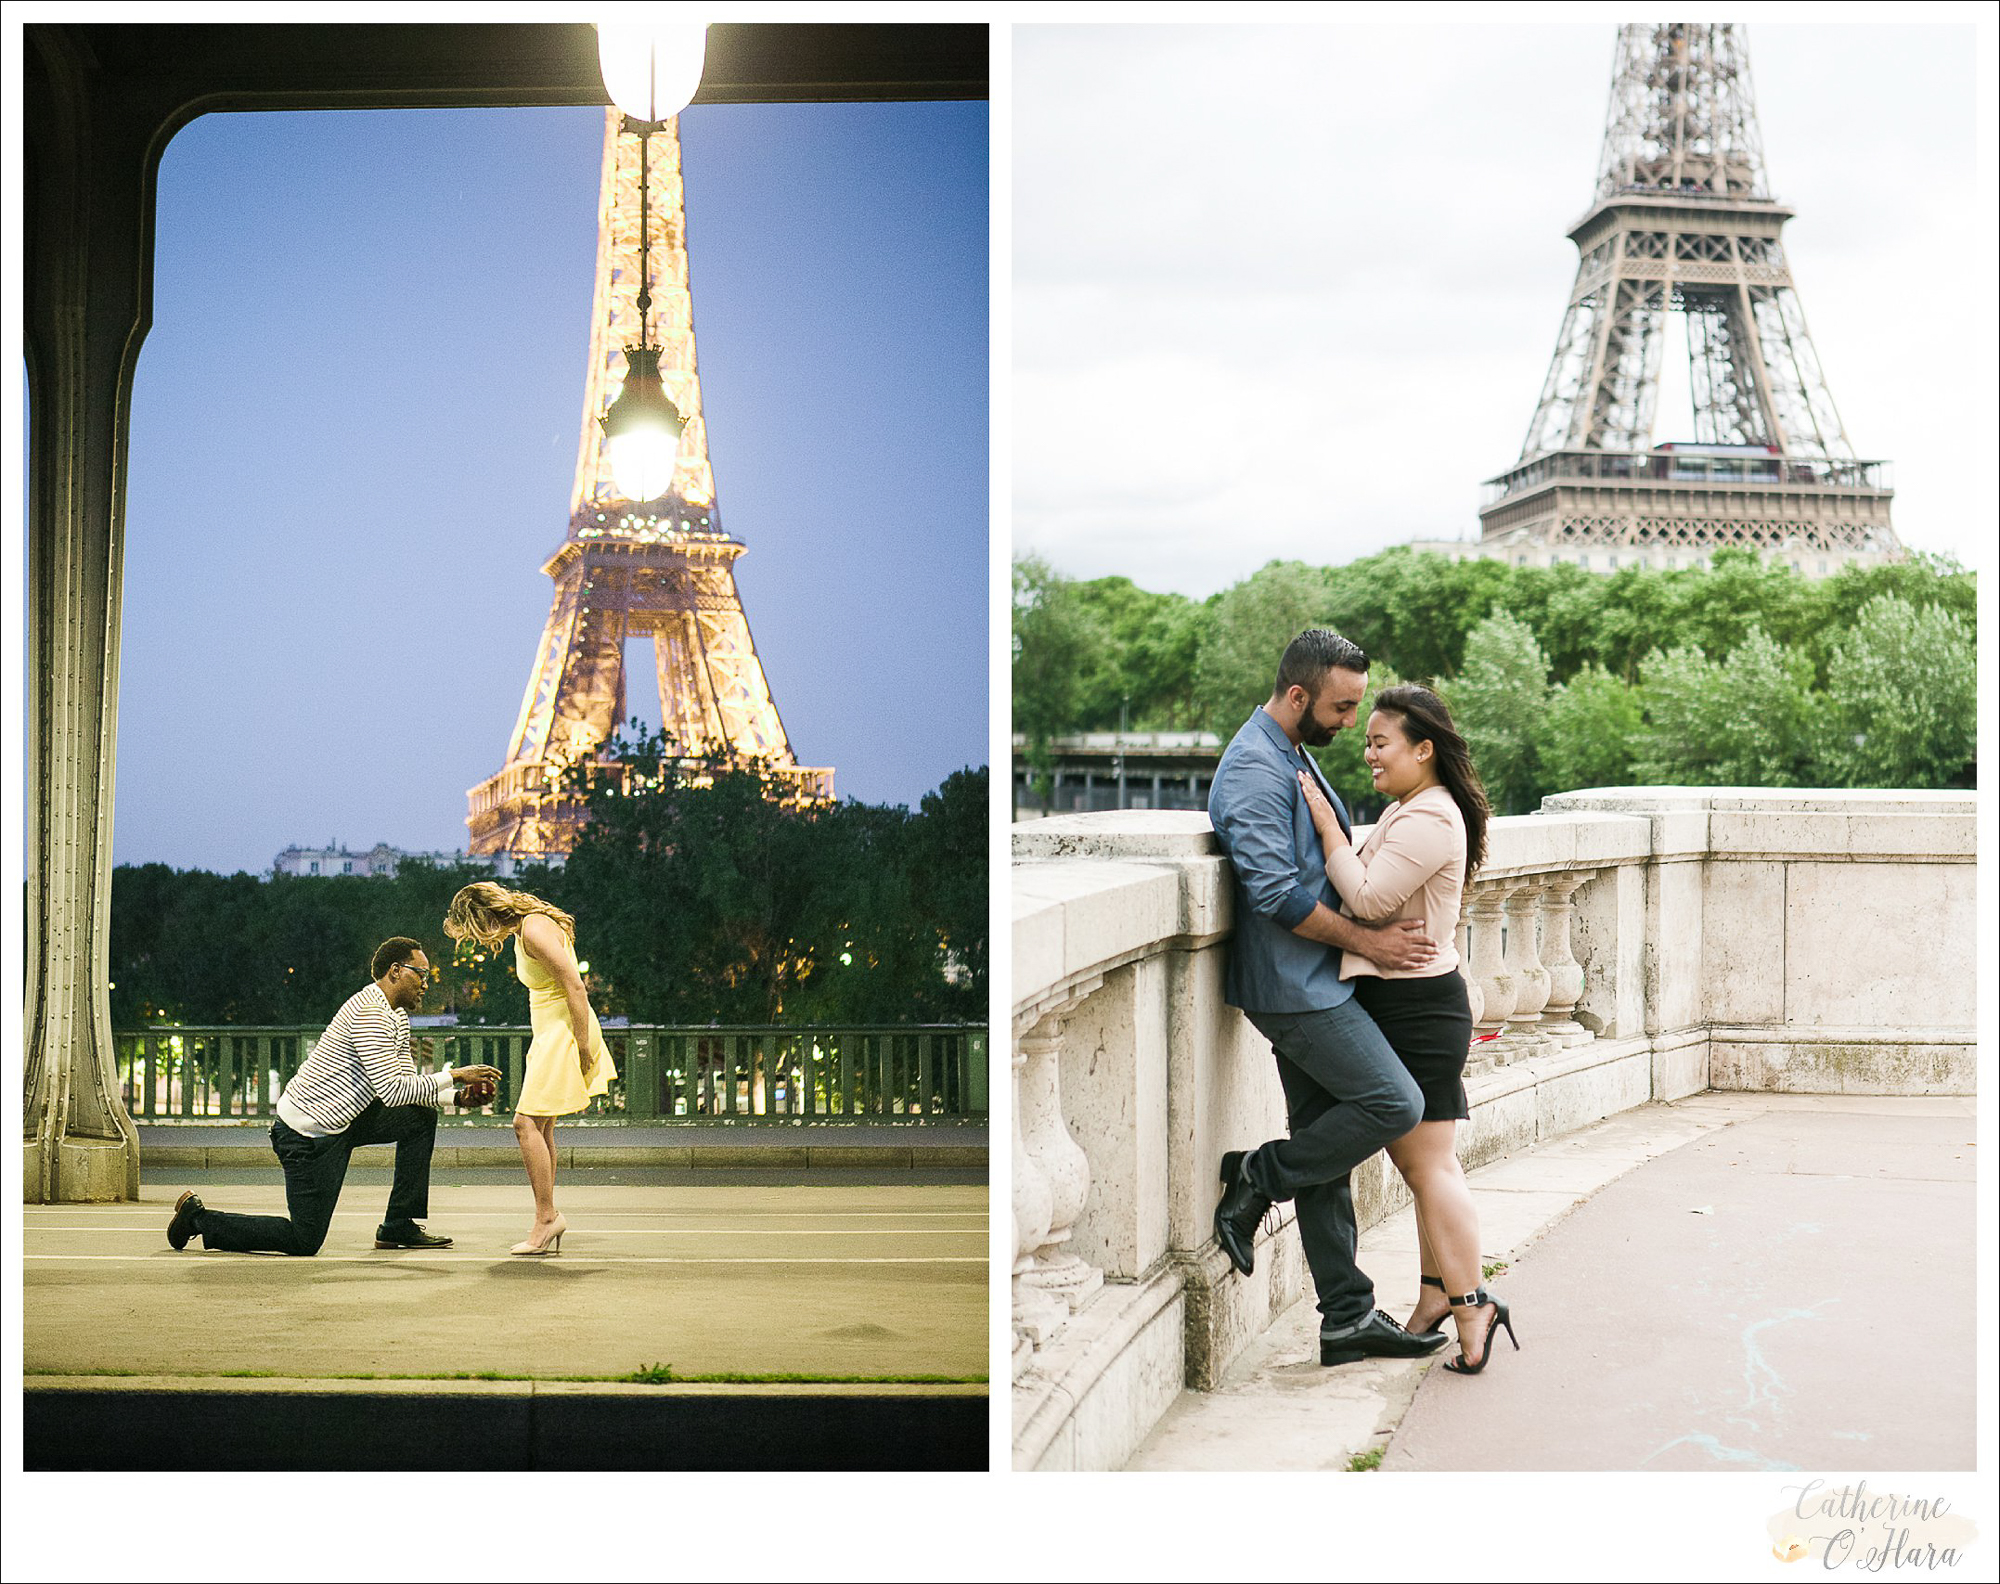 surprise proposal engagement photographer paris france-32.jpg